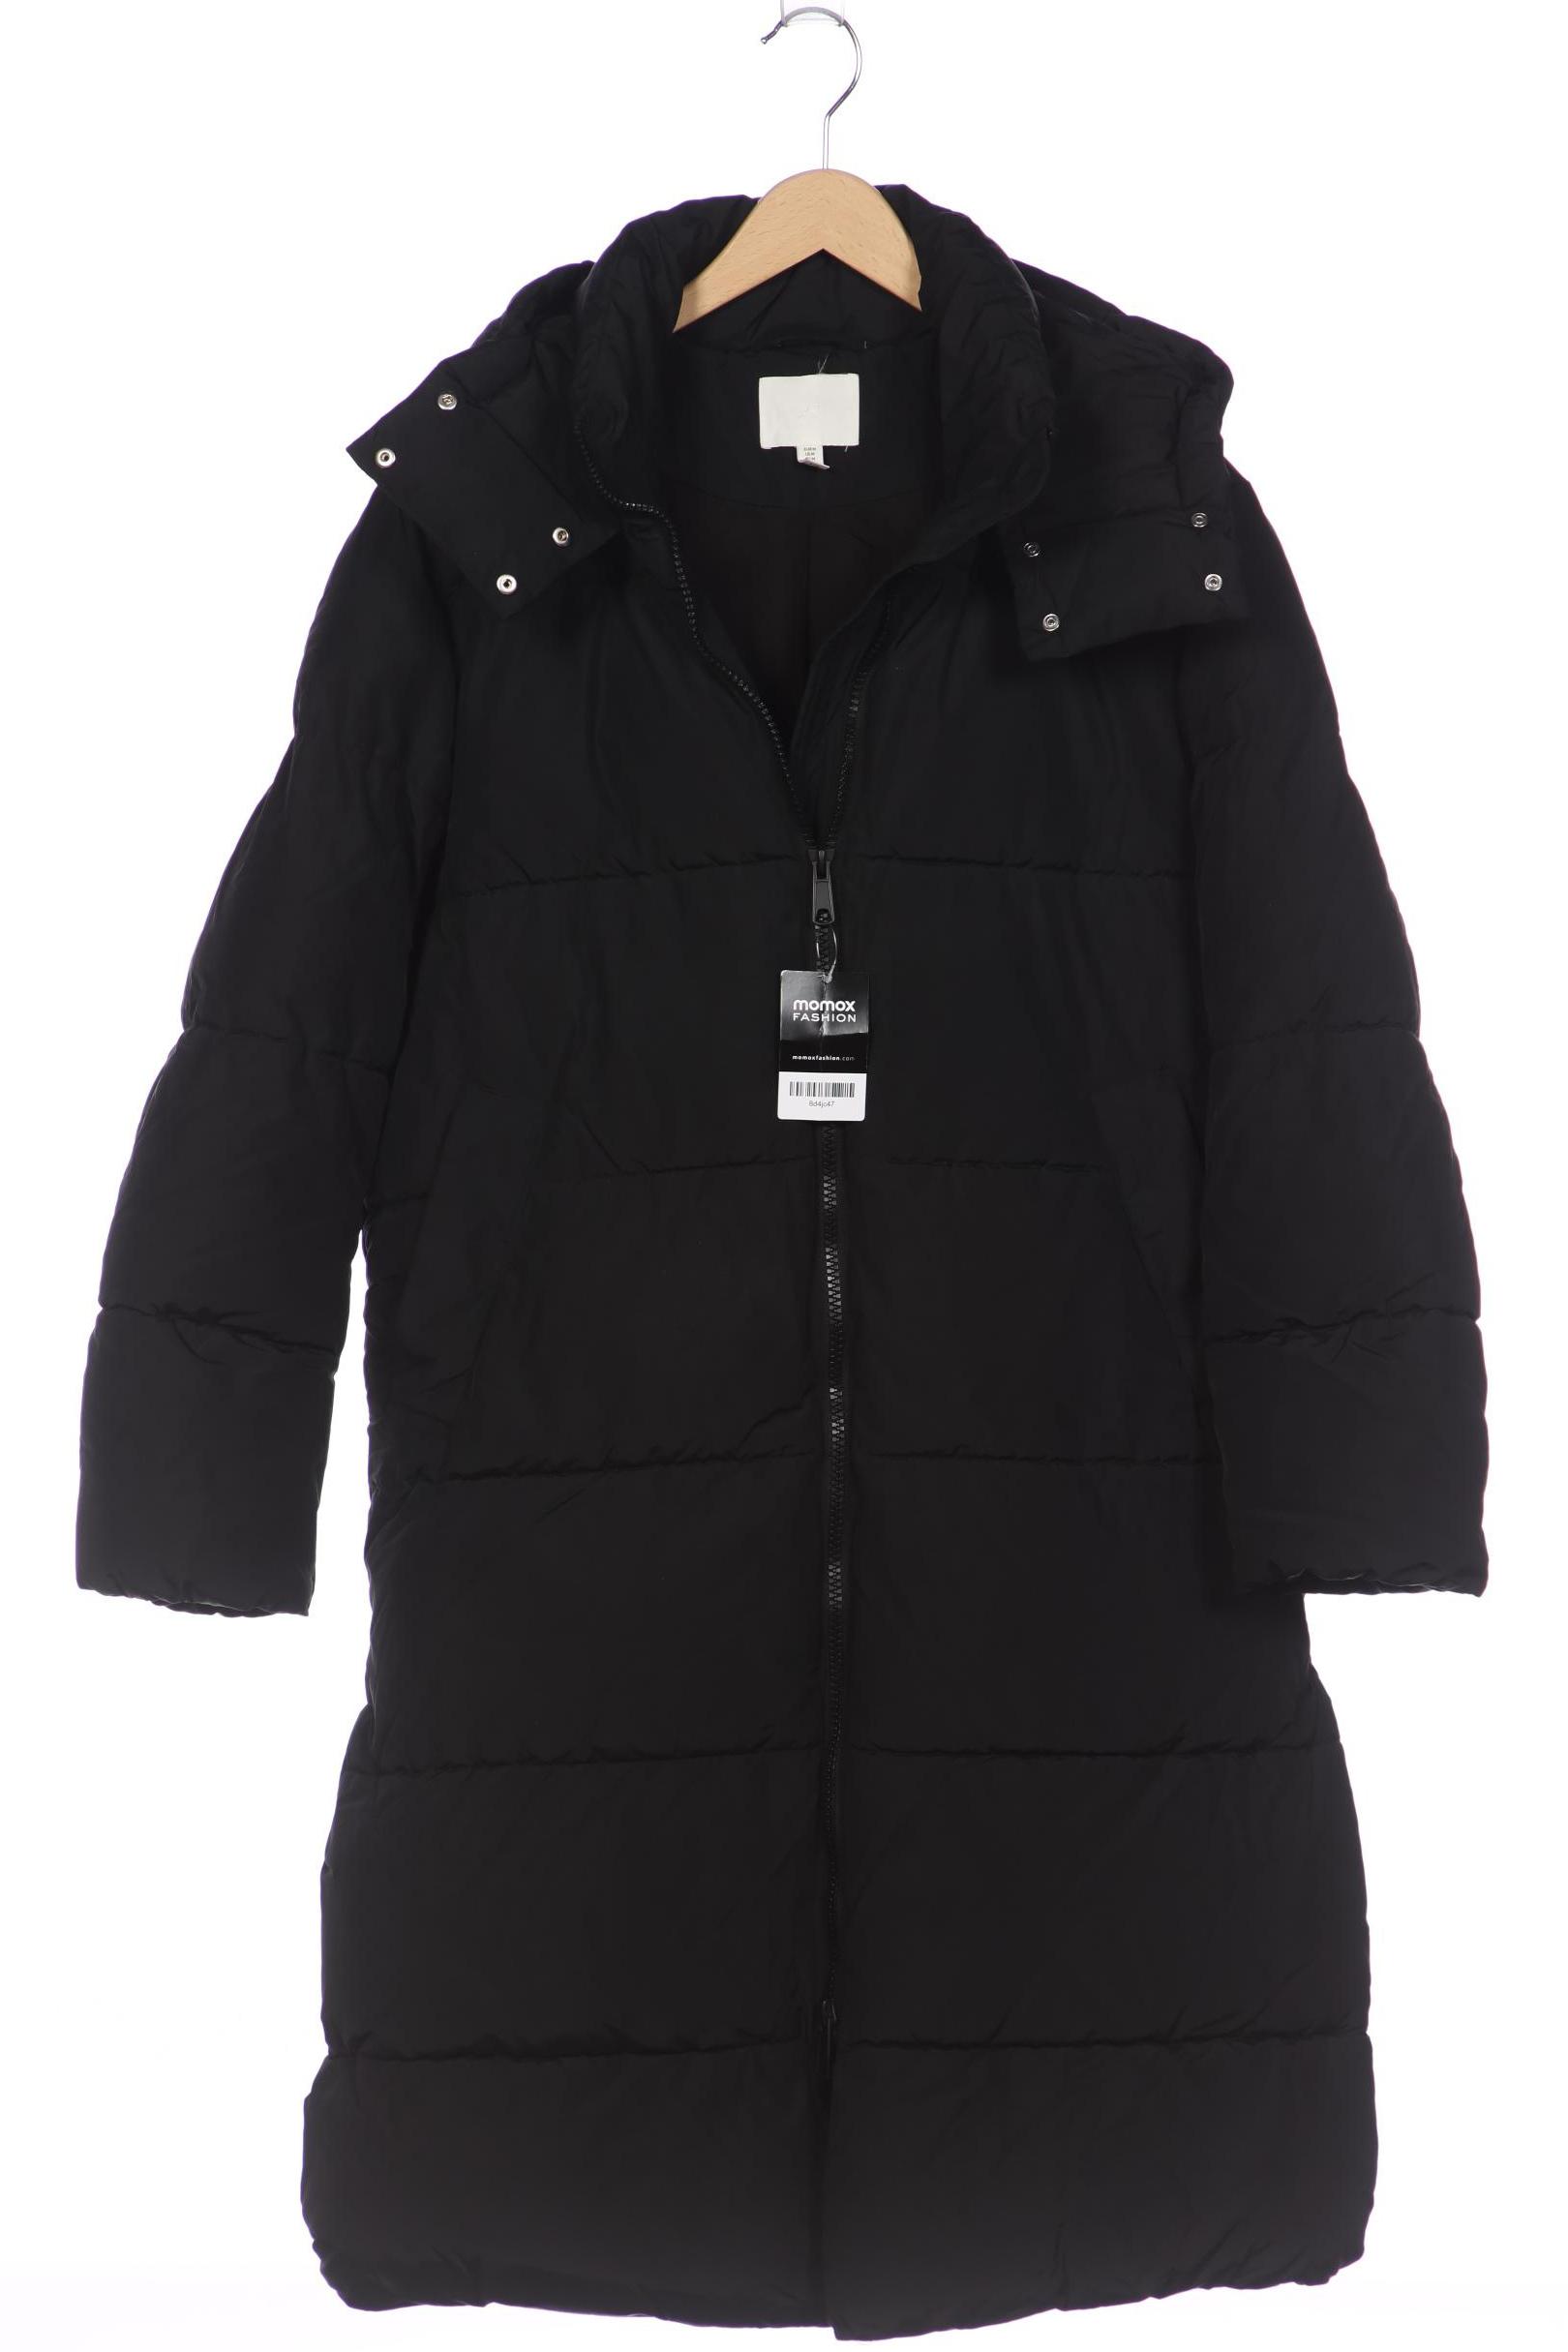 H&M Damen Mantel, schwarz, Gr. 38 von H&M